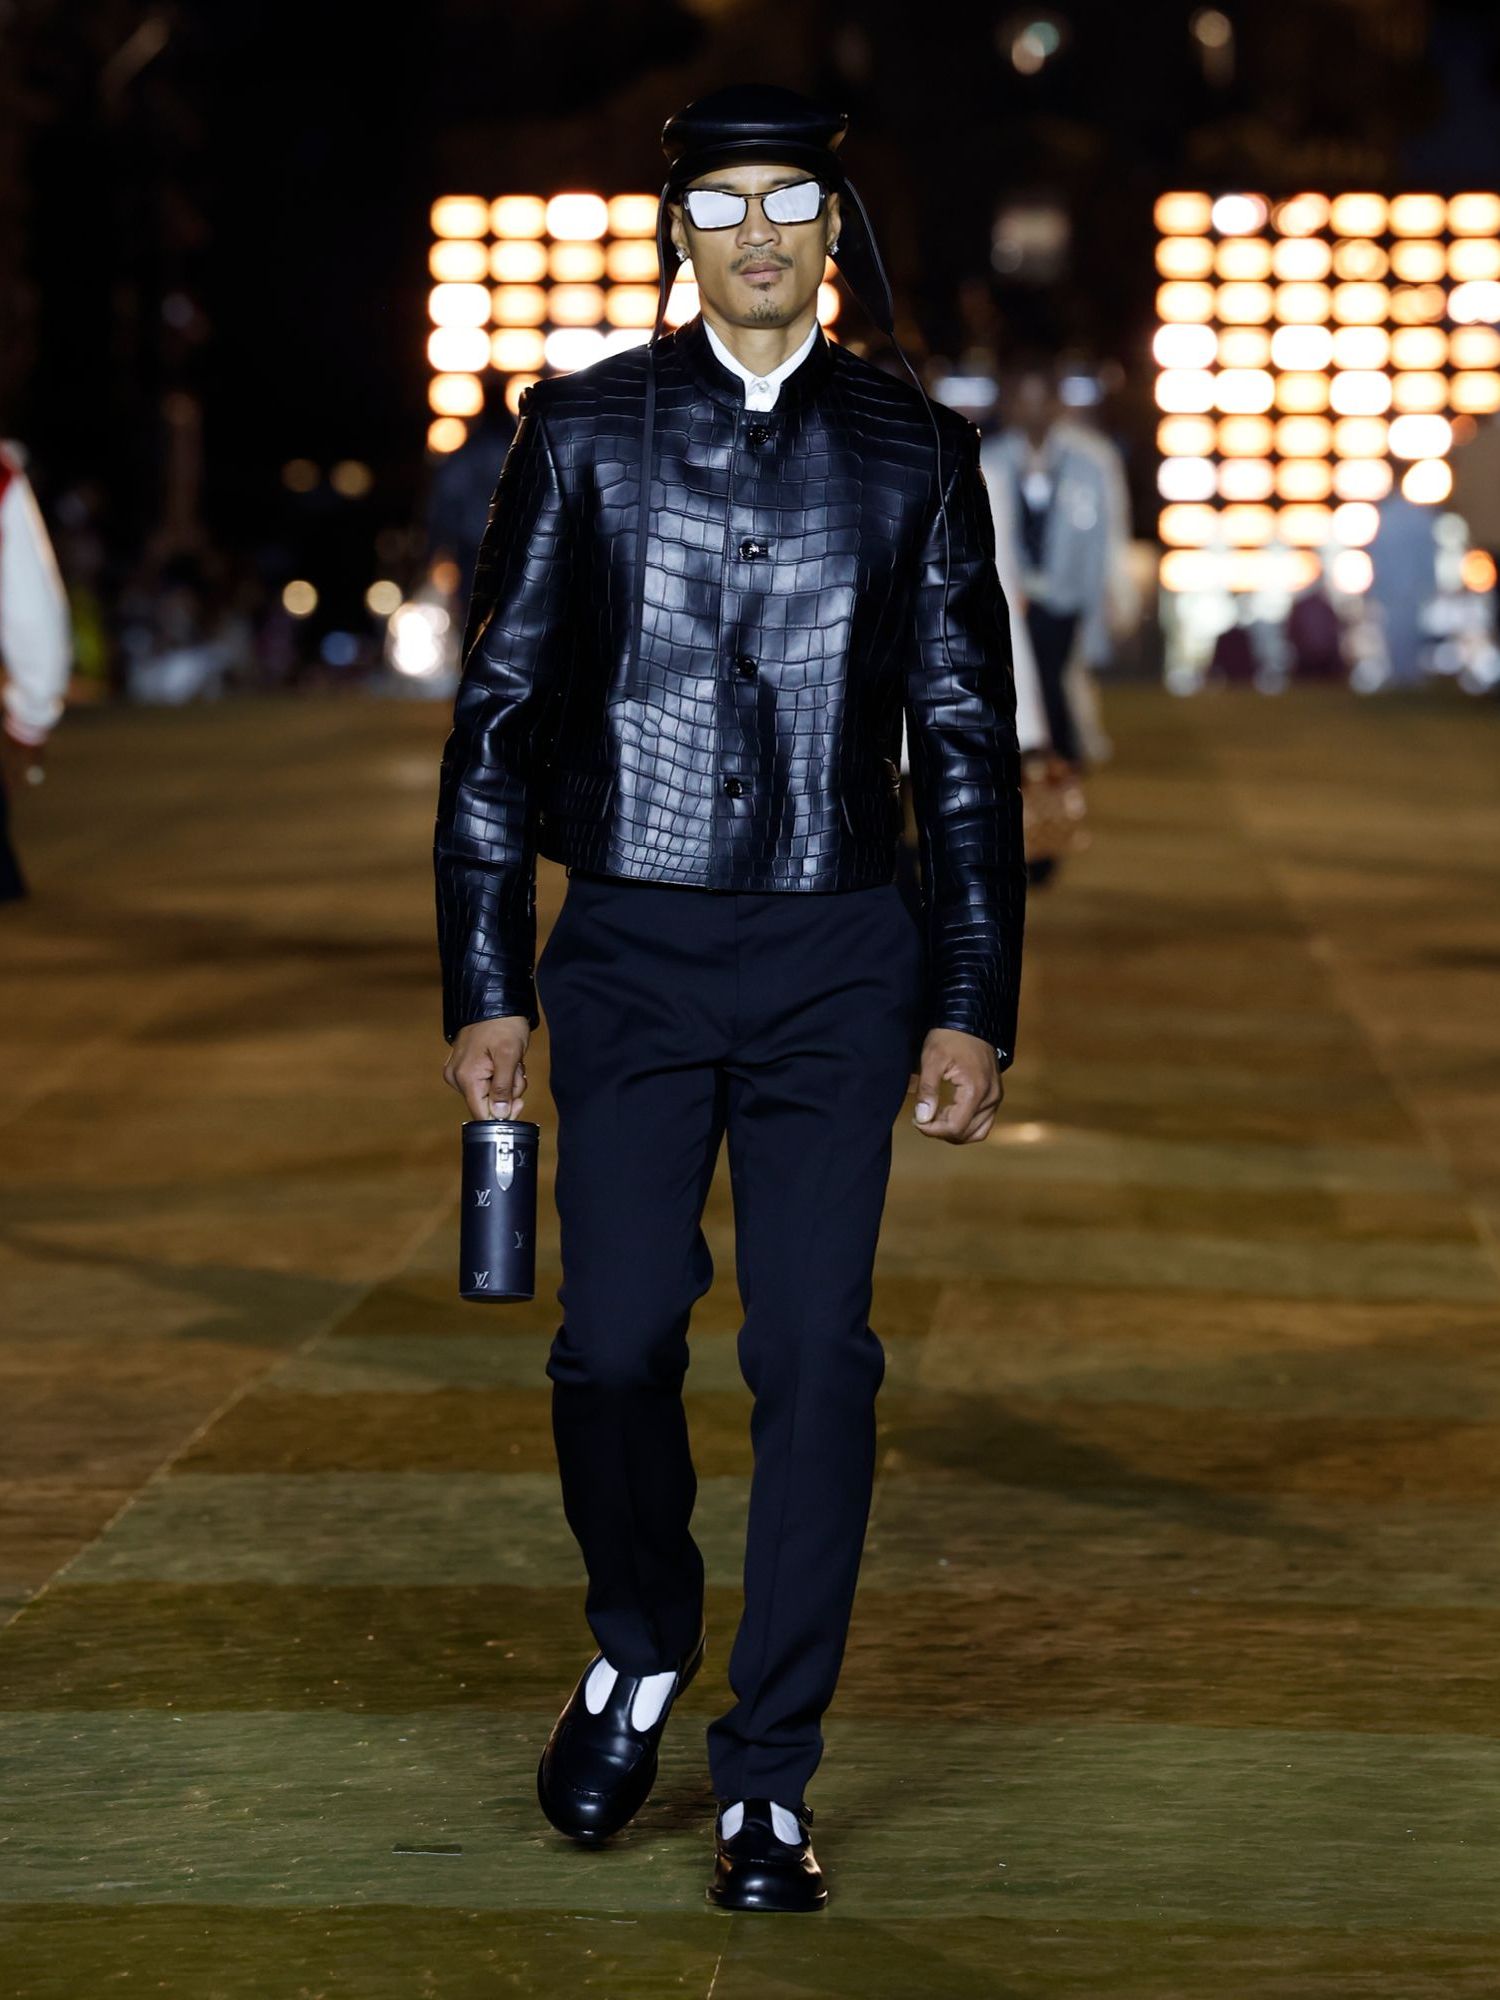 Louis Vuitton Men Leather Jacket